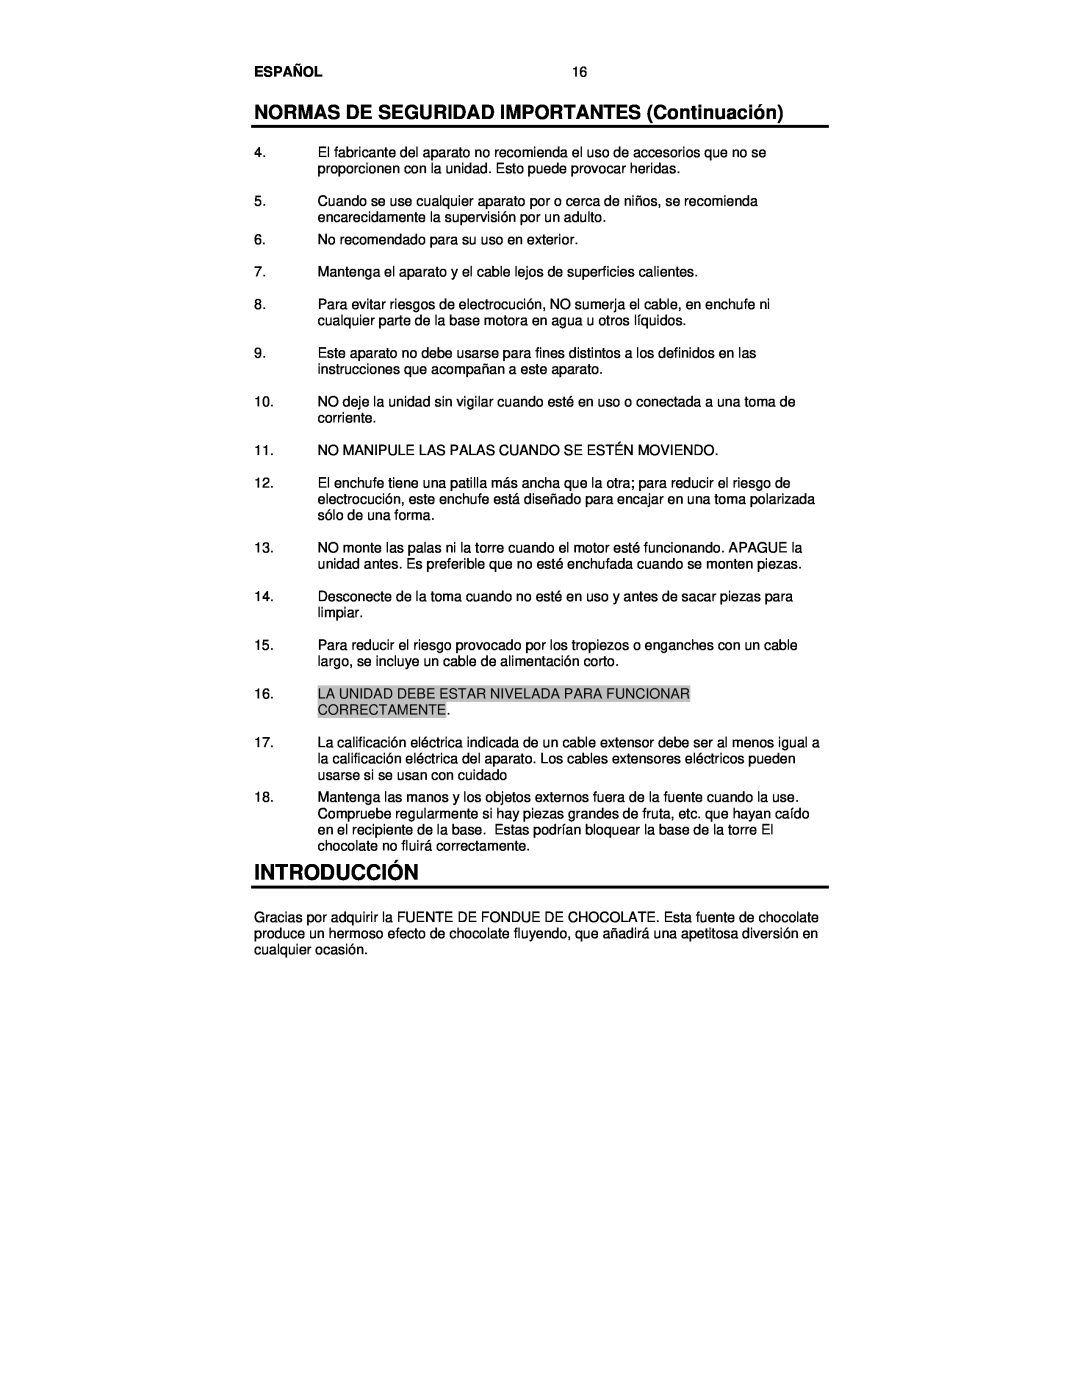 Nostalgia Electrics CFF-552 manual Introducción, NORMAS DE SEGURIDAD IMPORTANTES Continuación, Español 